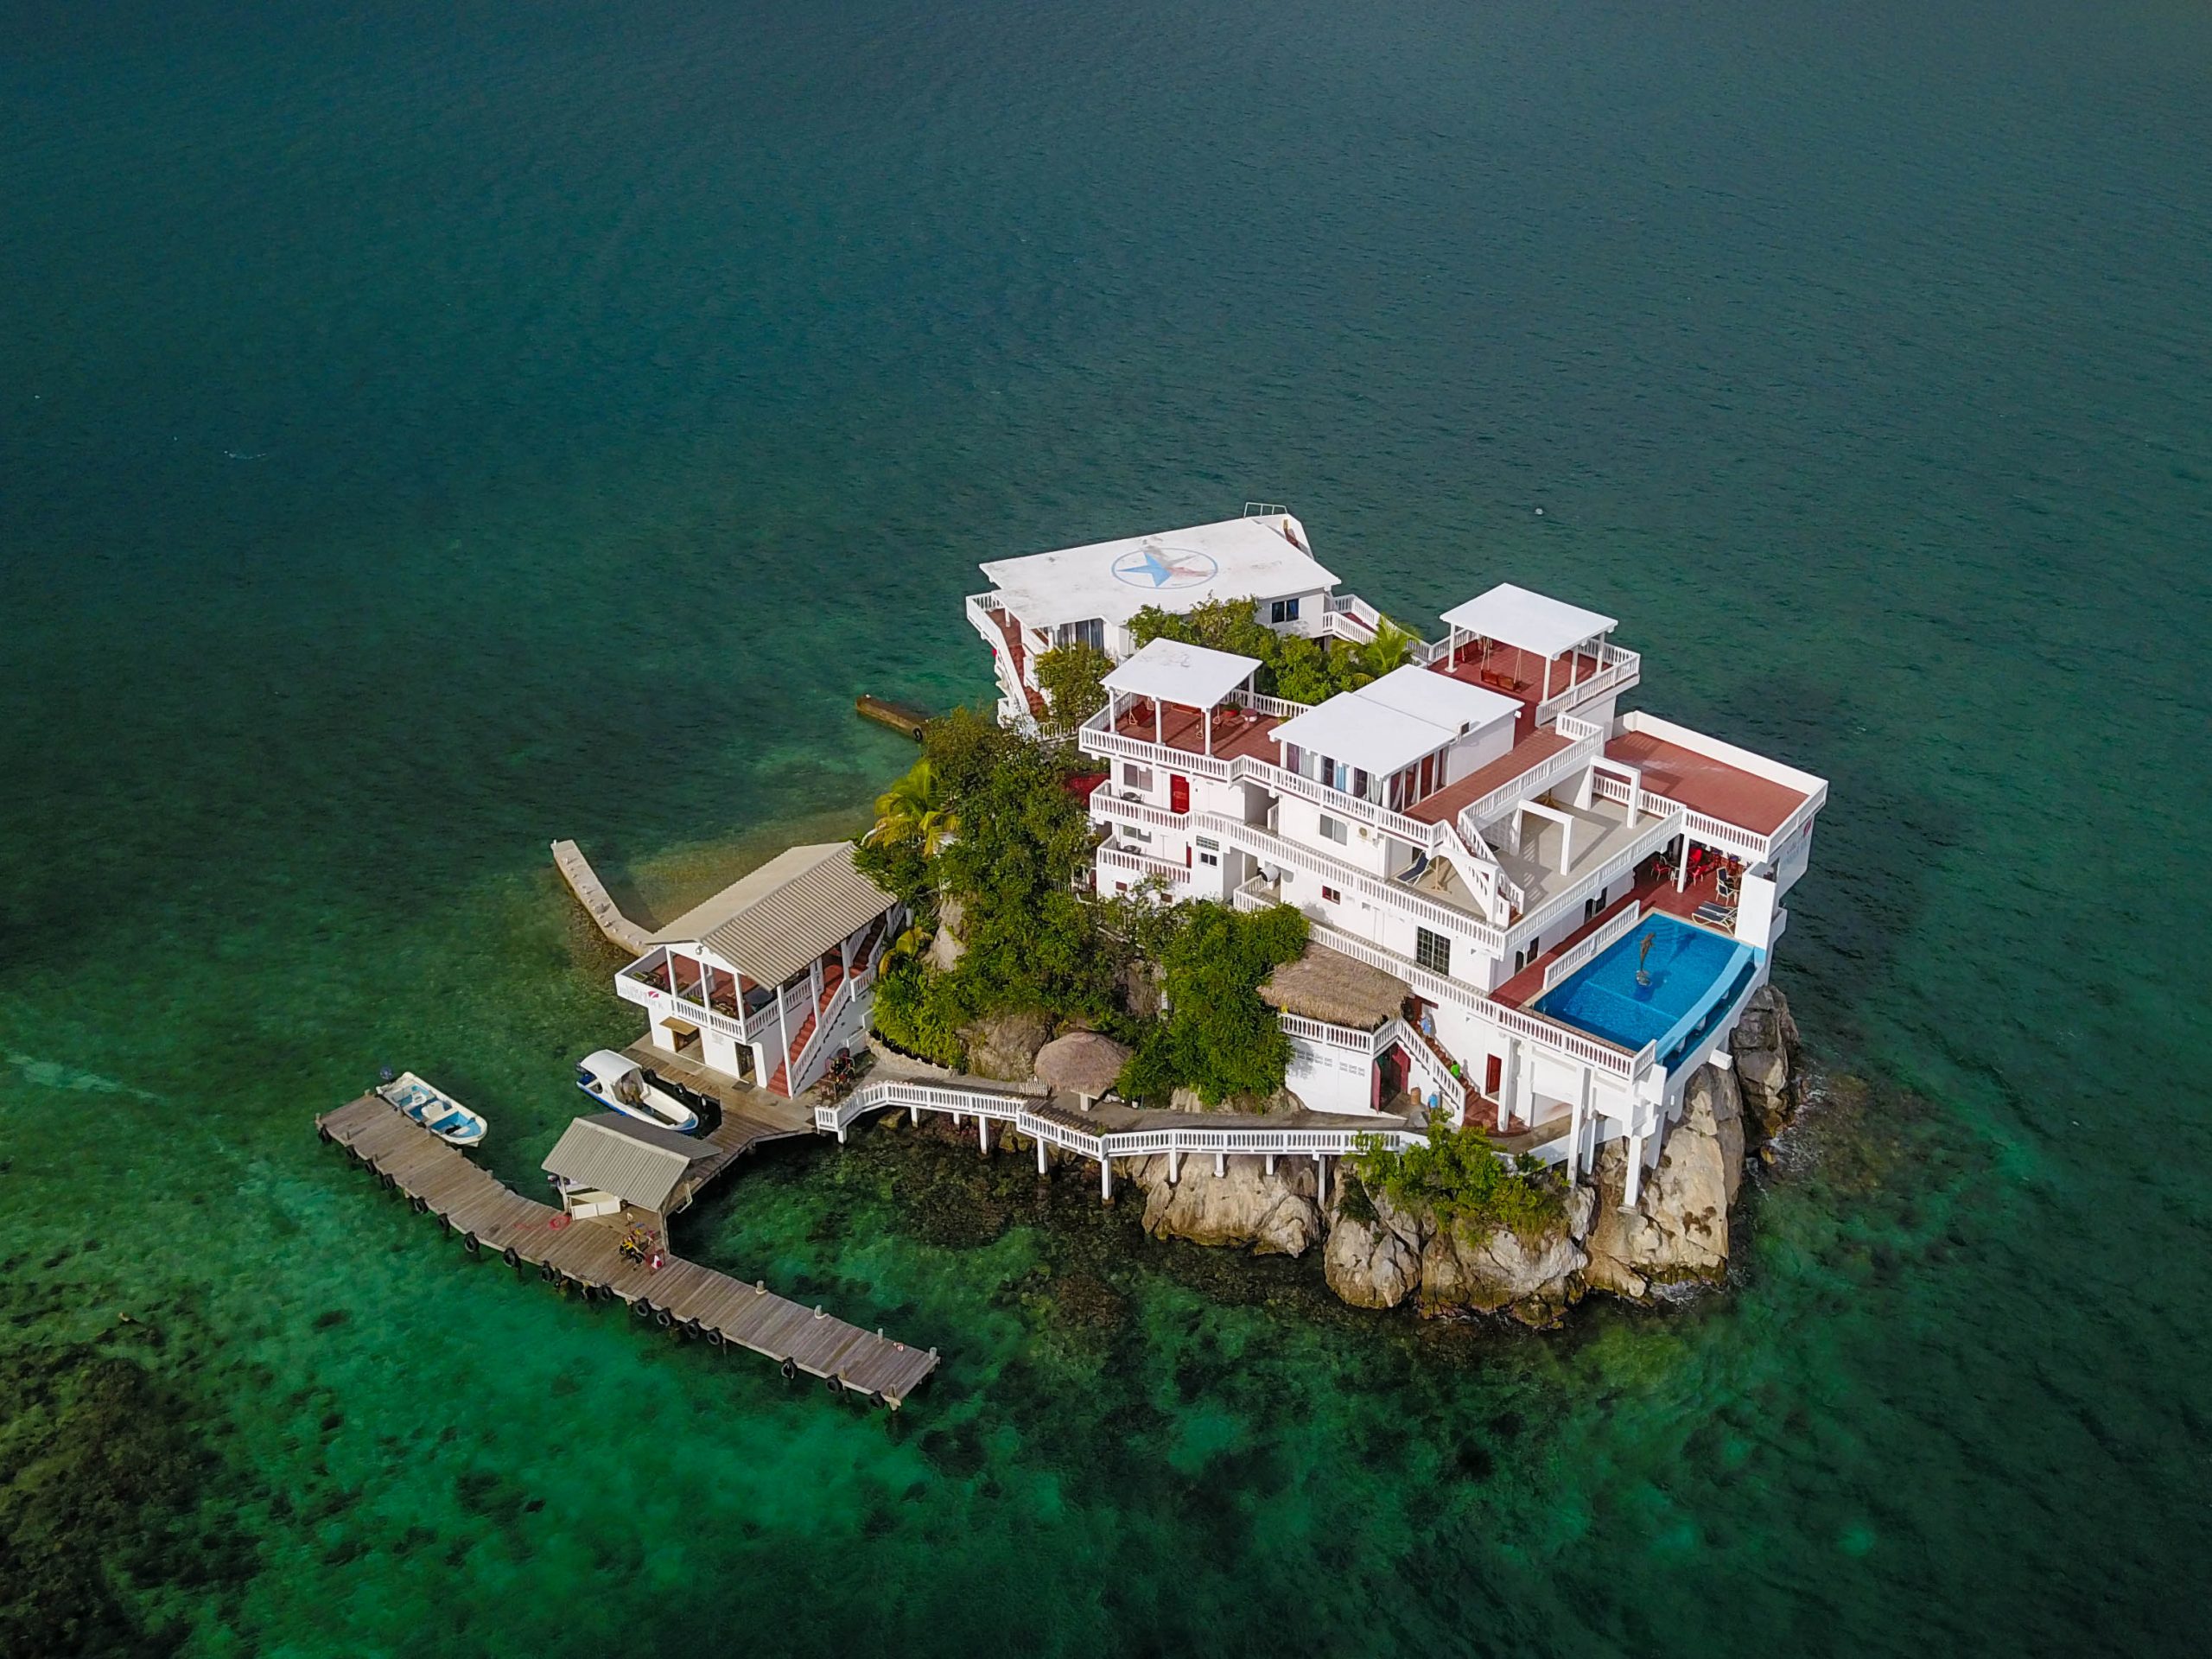 Villa On Dunbar Rock - Guanaja, Honduras aerial view of resort